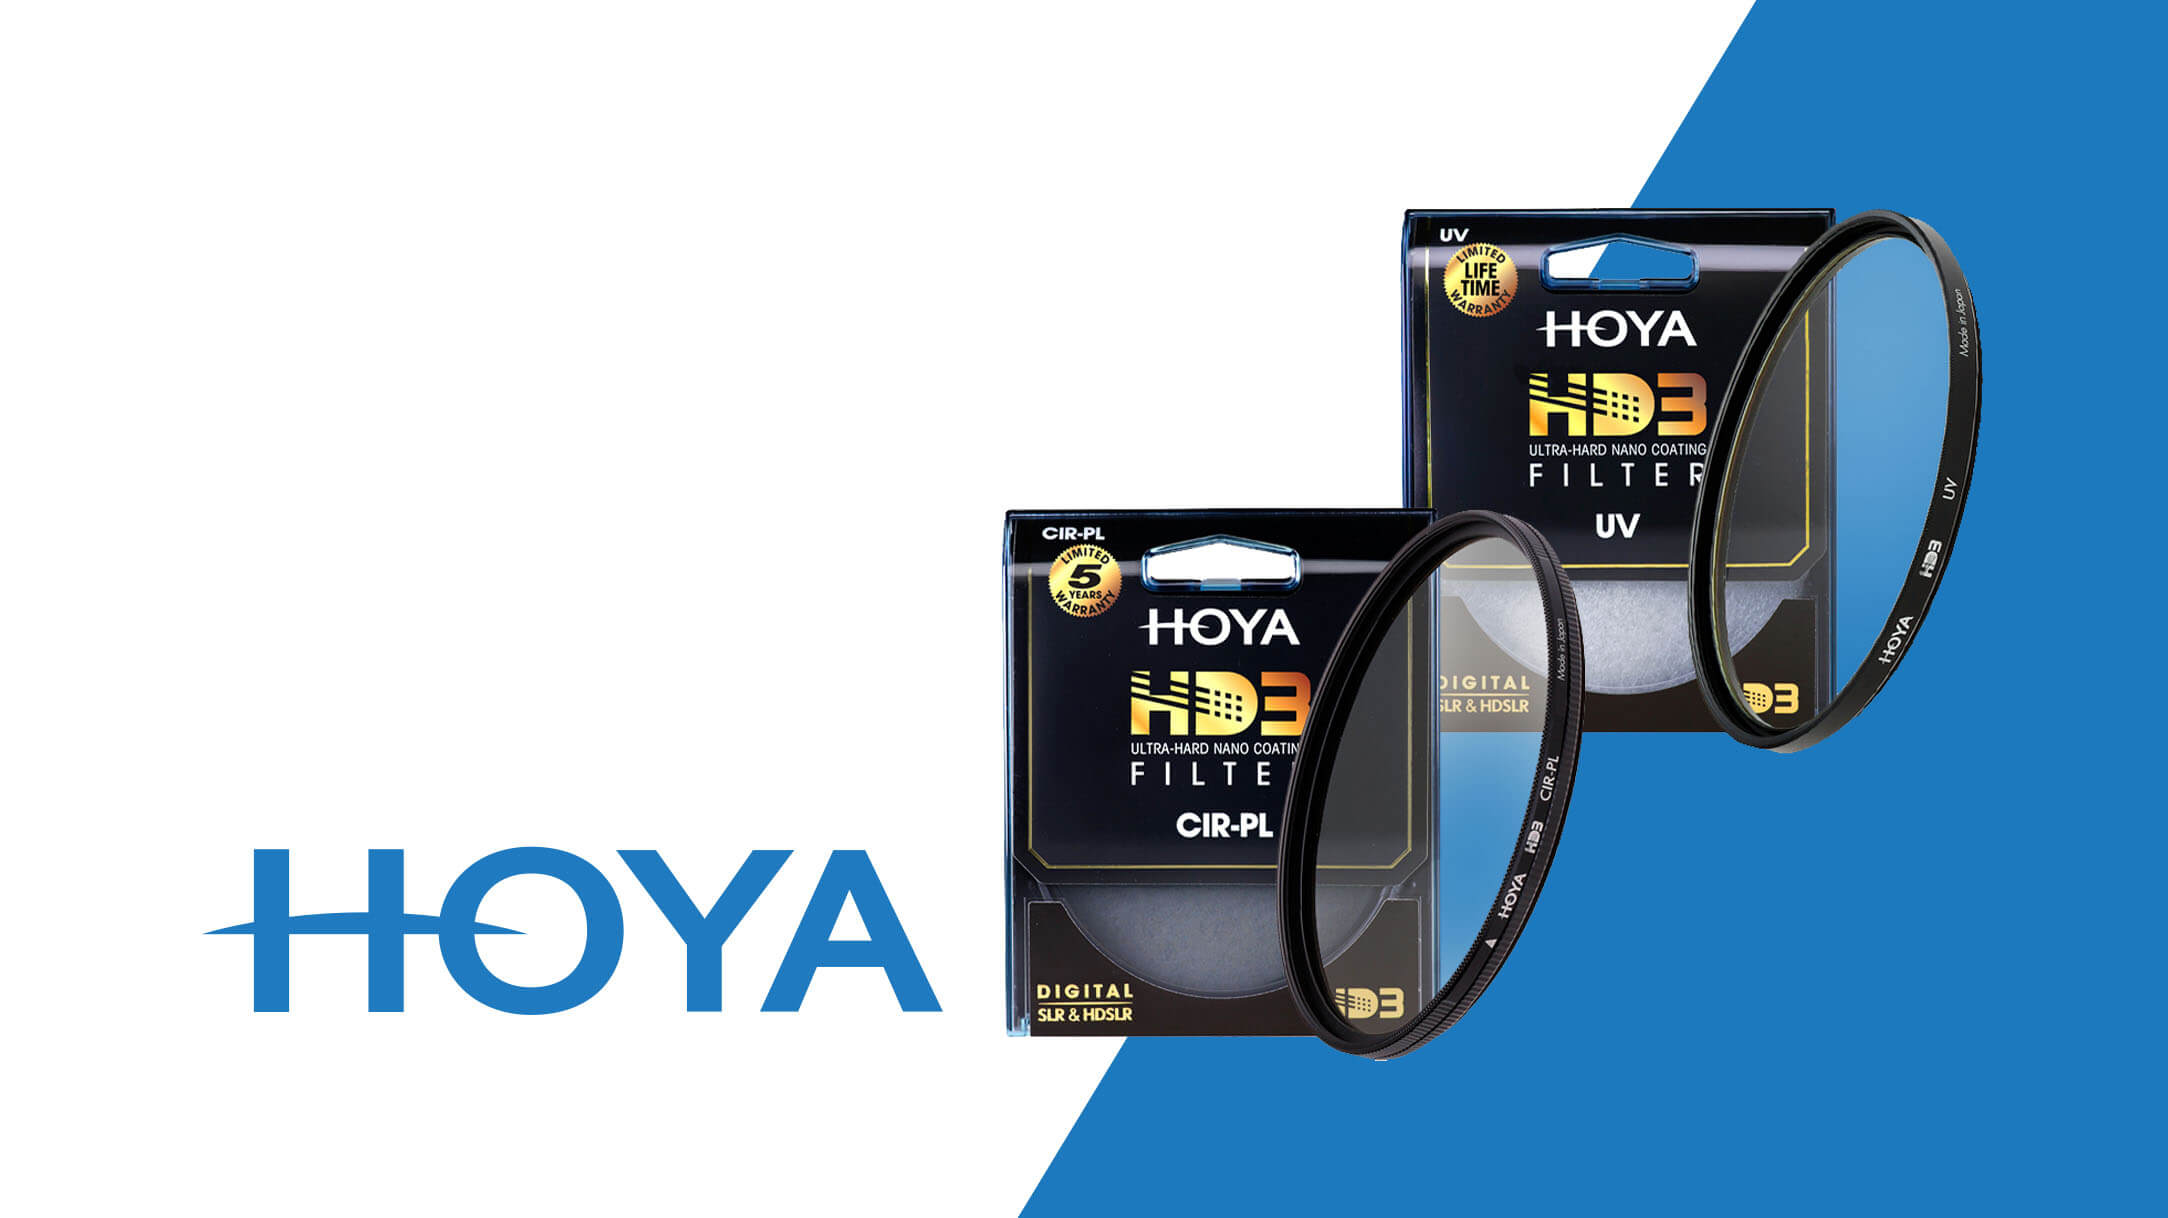 Hoya HD3 - premiera filtrów o niesamowitej jakości optycznej